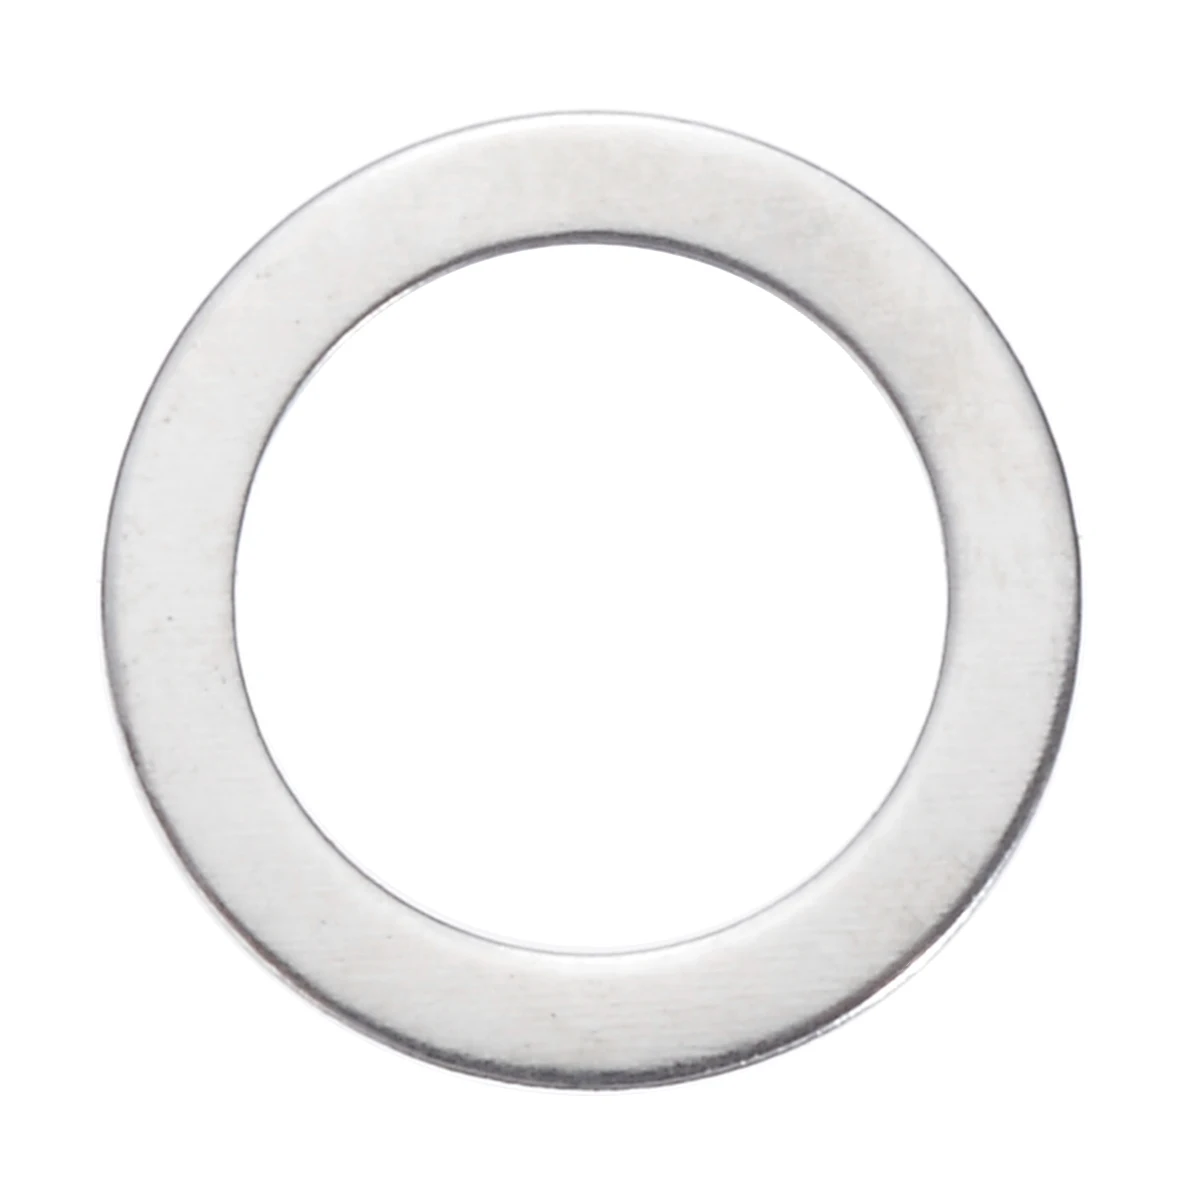 Mayitr 1 шт. 115 мм алмазные пильные диски Дисковая Пила диск для сухой резки для бетона керамический кирпич мрамор камень пила Инструмент